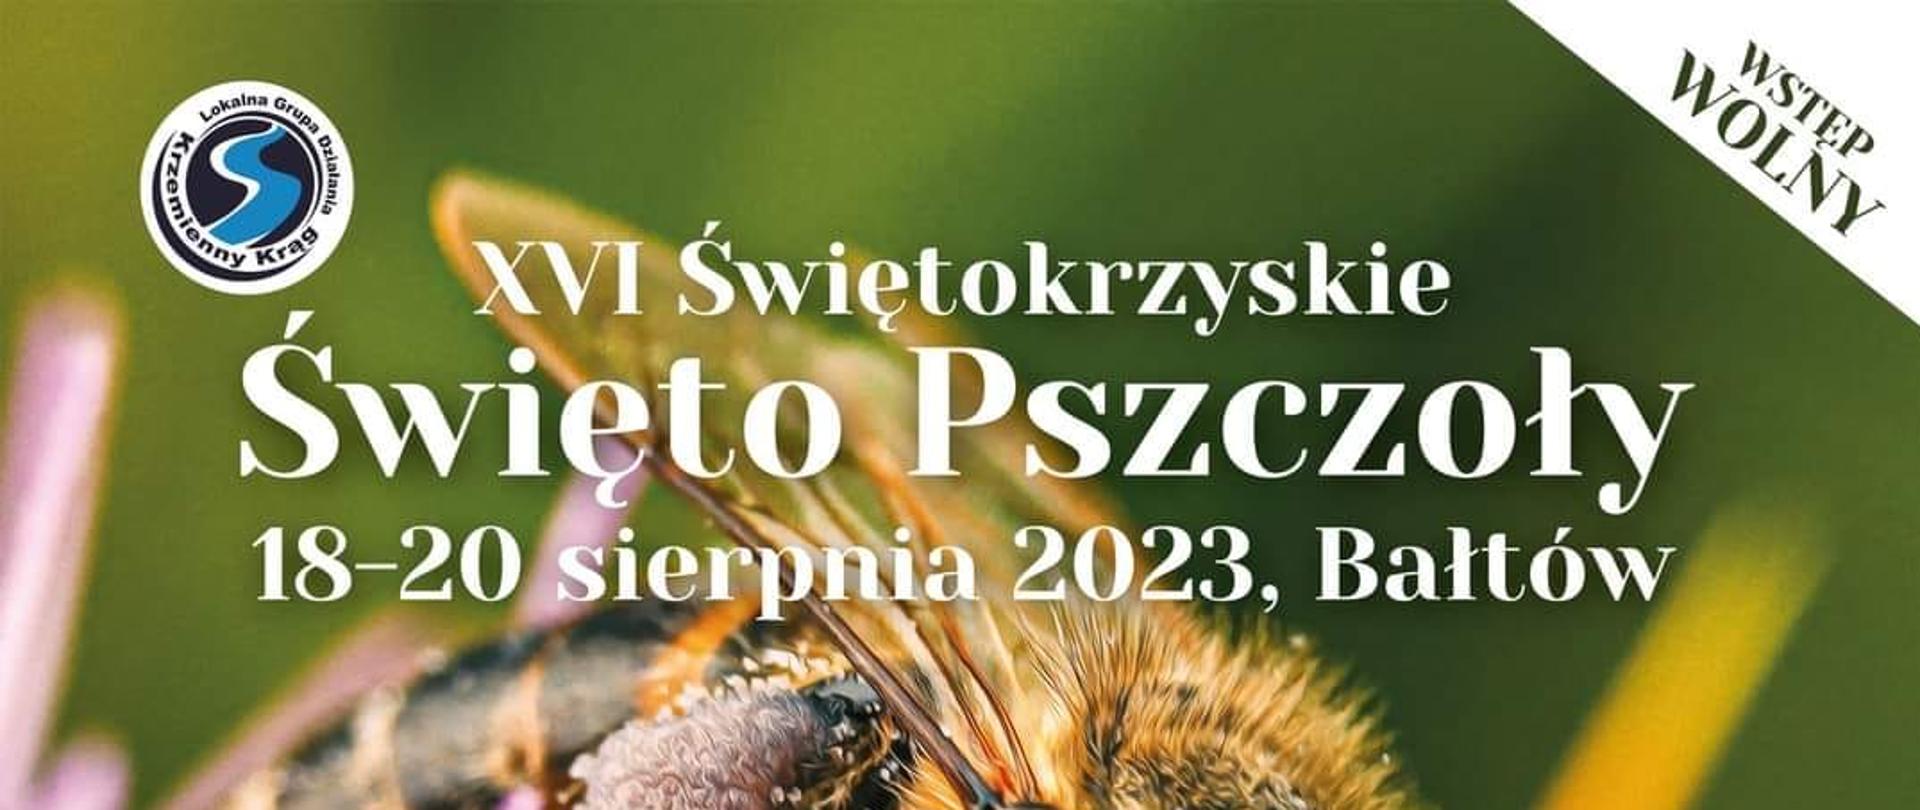 XVI Świętokrzyskie Święto Pszczoły 18-20 sierpnia 2023, Bałtów